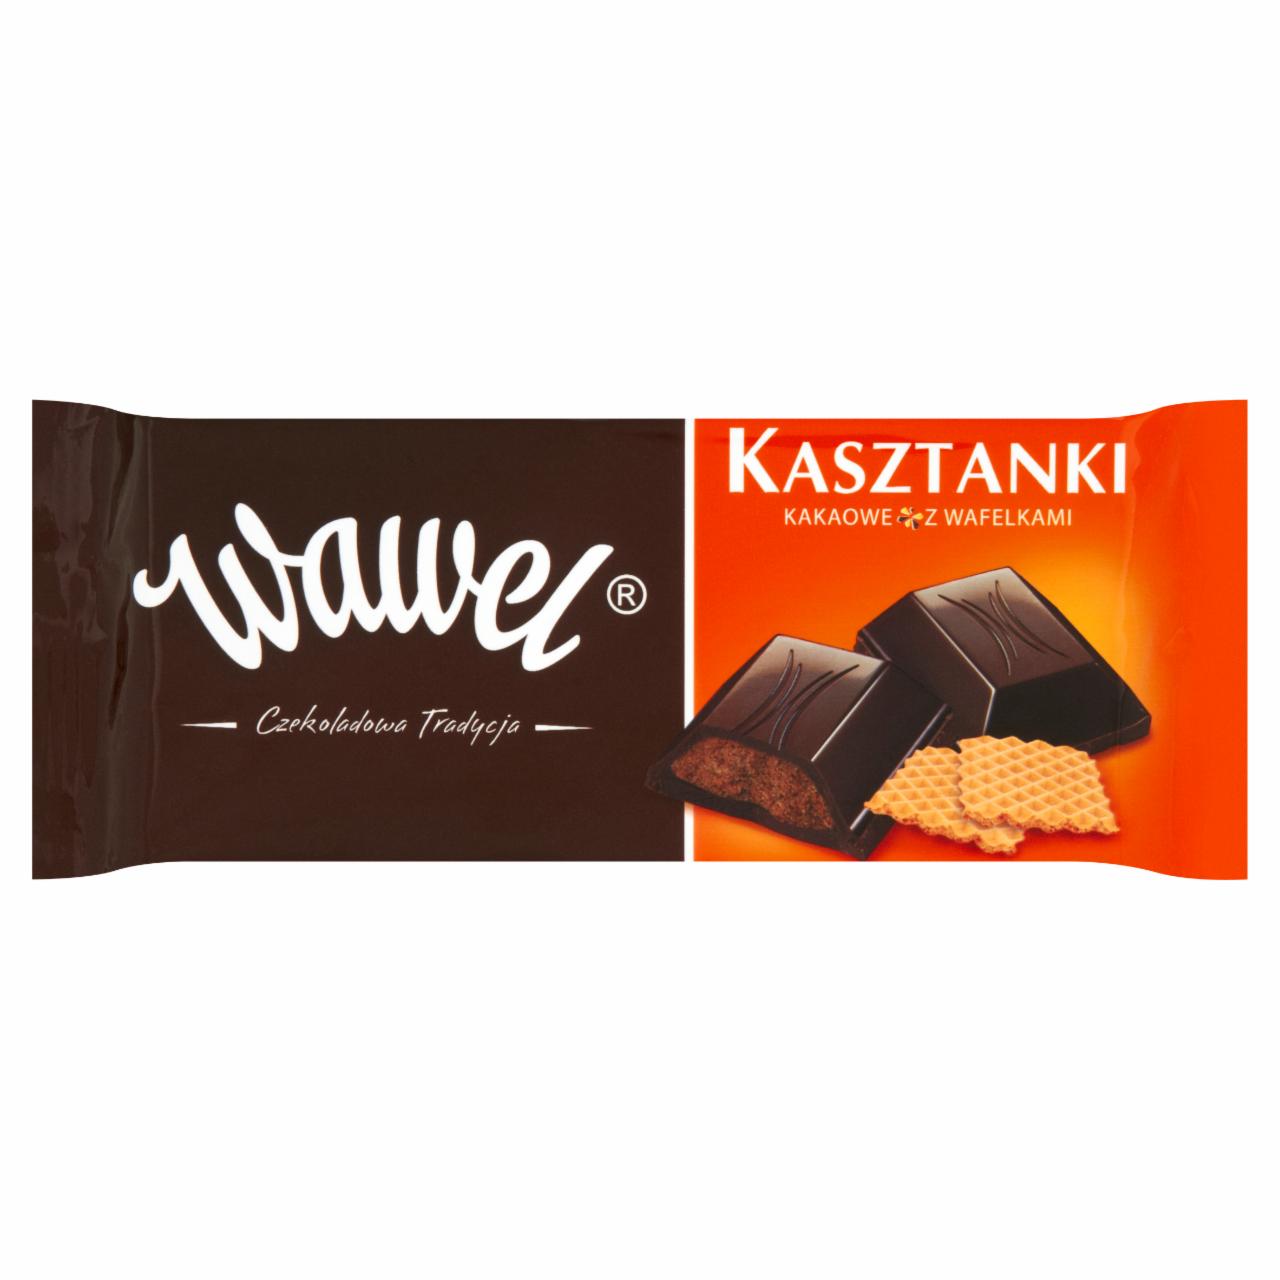 Zdjęcia - Wawel Kasztanki kakaowe z wafelkami Czekolada nadziewana 4 x 100 g